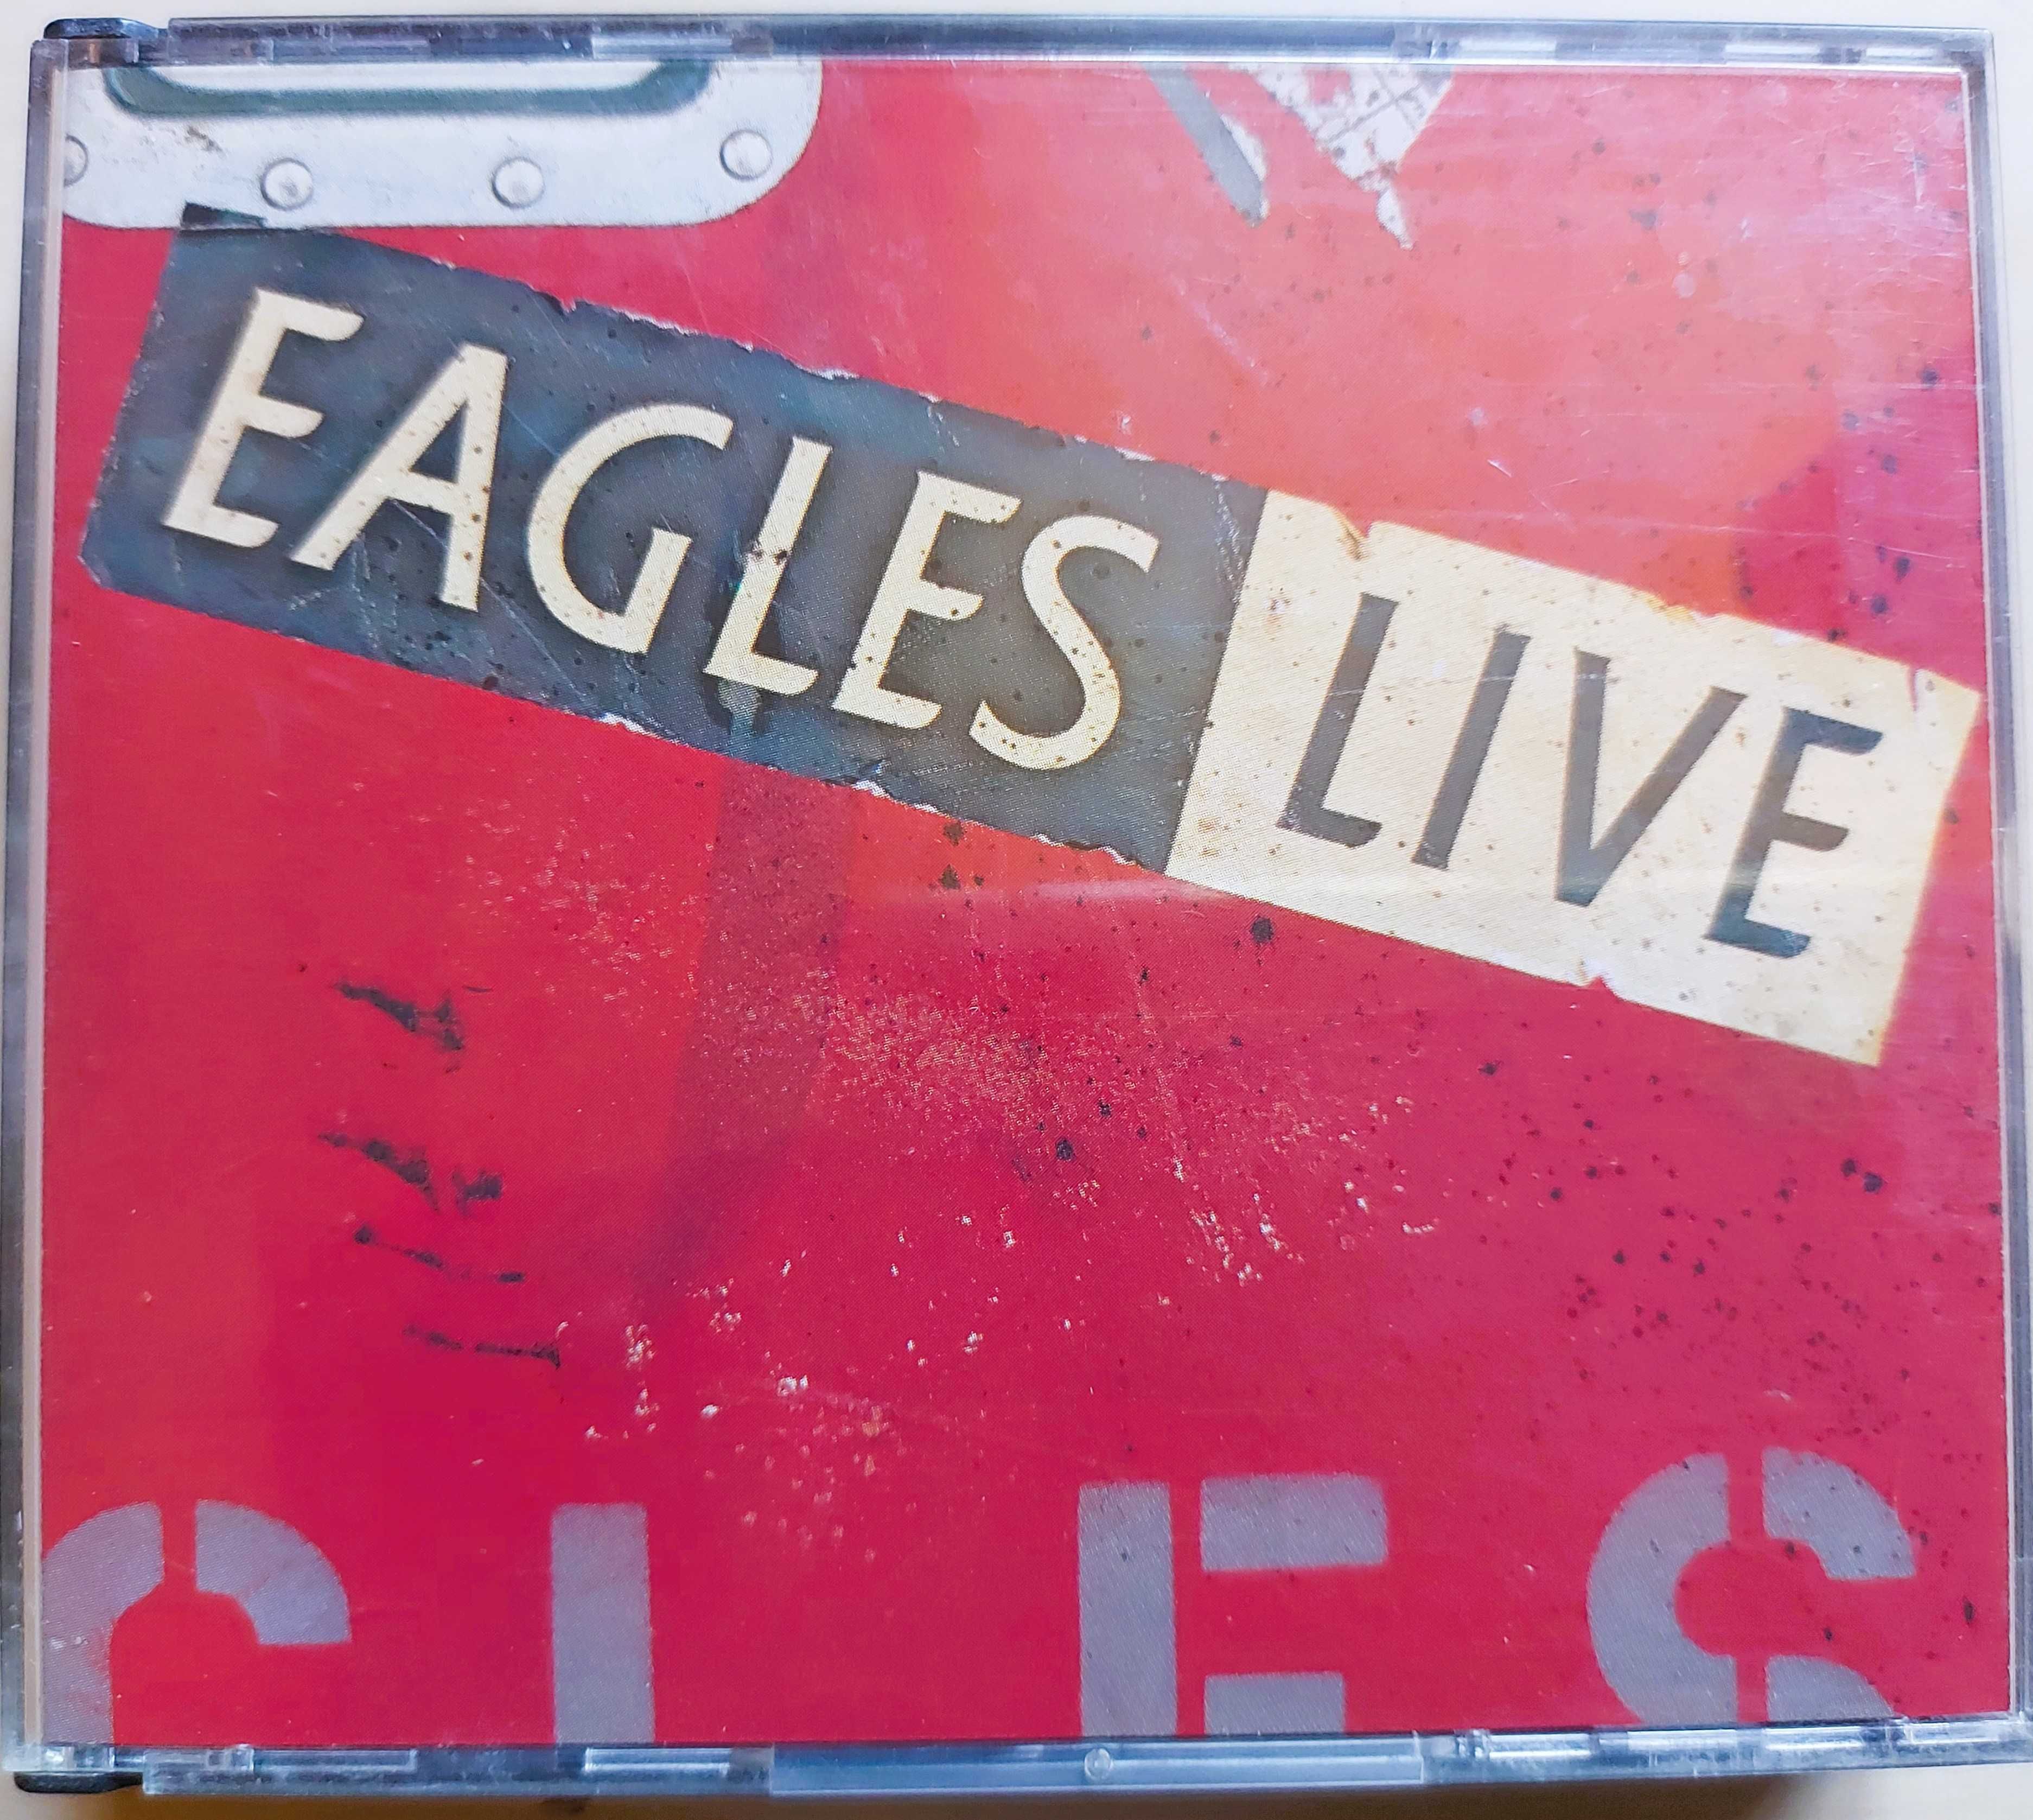 Podwójna płyta CD Eagles "Live" fat box